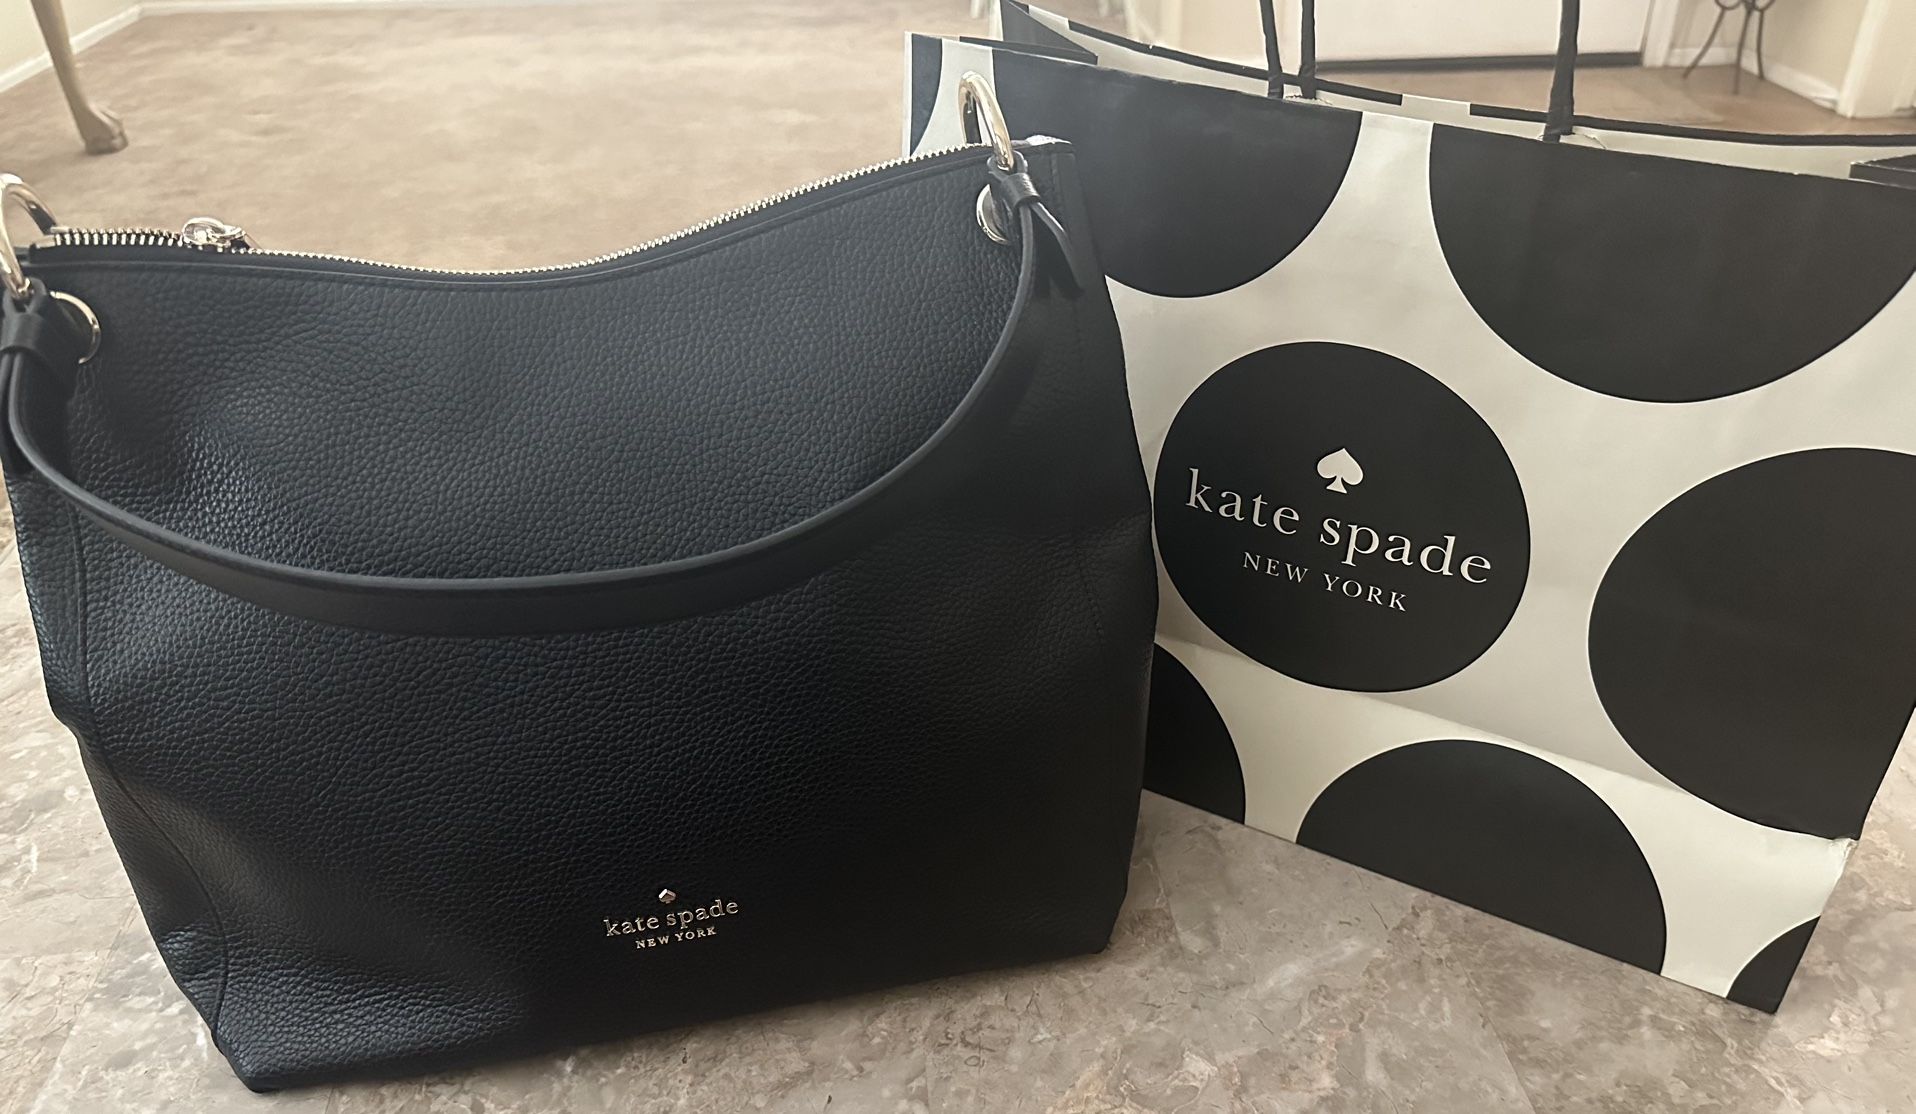 Kate Spade handbag